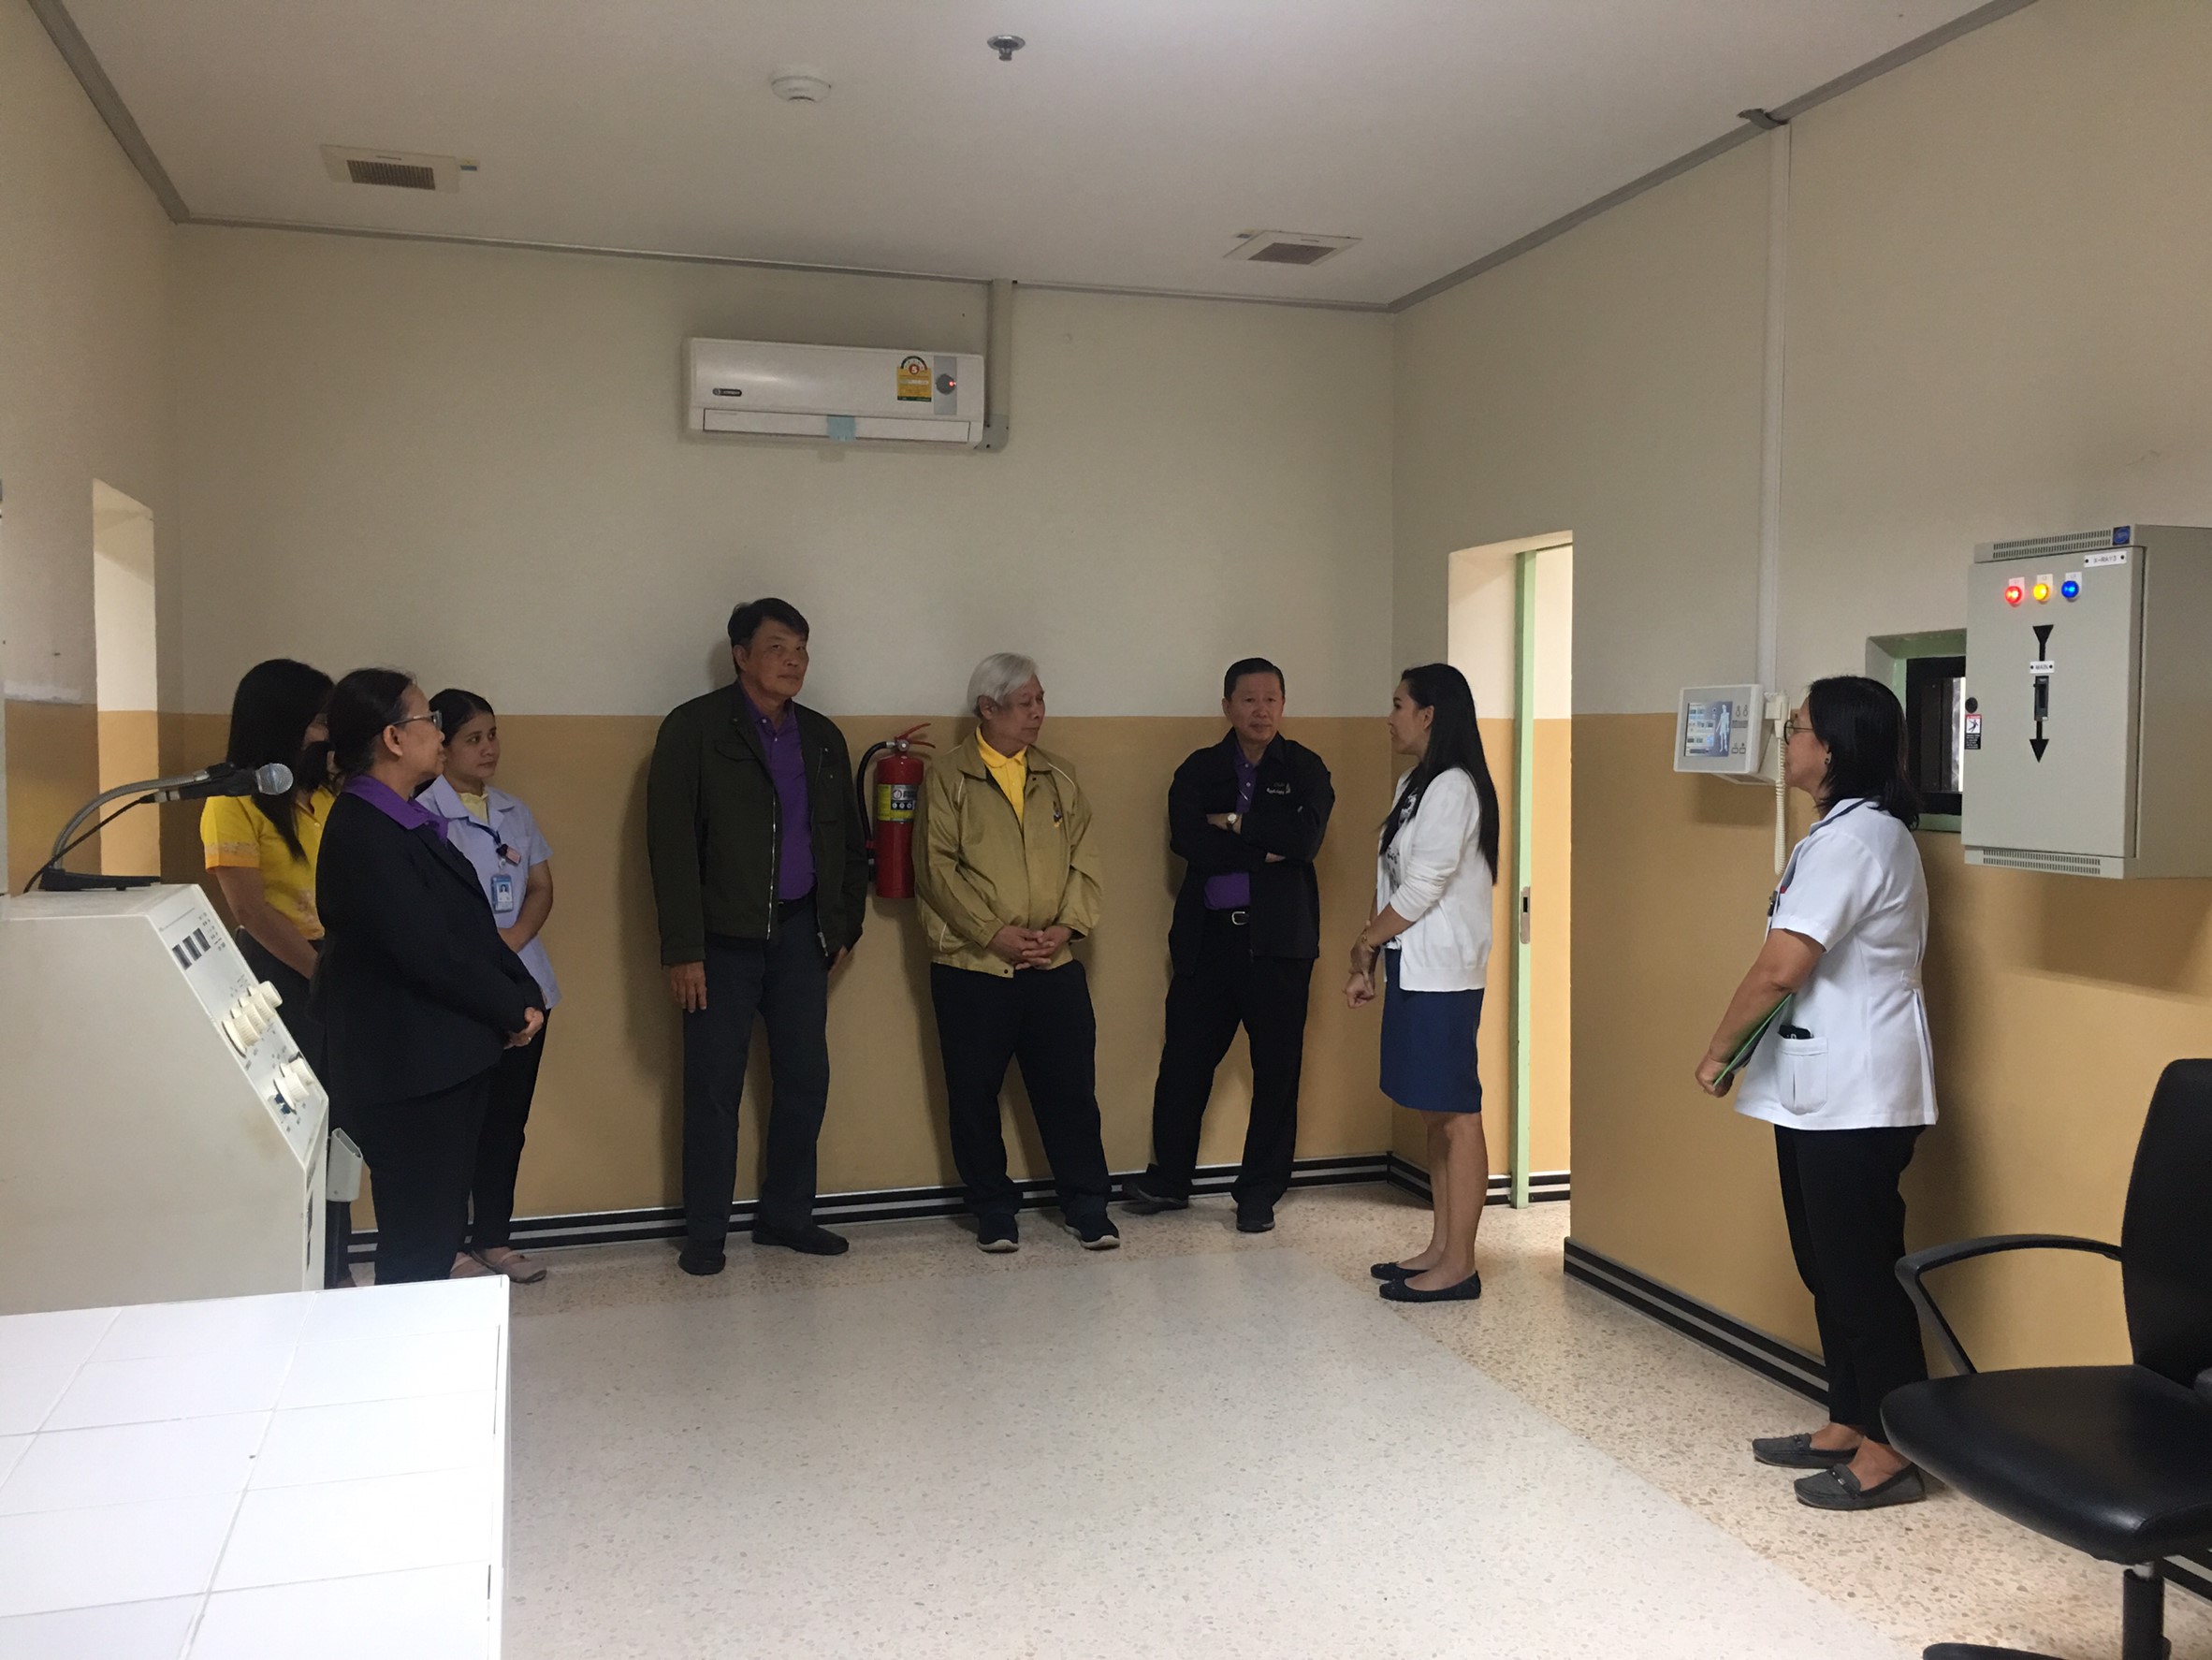 ประชุมวิชาการร่วมกับรังสีการแพทย์แห่งประเทศไทย ครั้งที่17 27-29 พ.ย. - พร้อมเข้าเยี่ยมและให้กำลังใจหน่วยงานรังสีวิทยาในพื้นที่จังหวัดอุบลราชธานีระหว่างวันที่ 25-26 พฤศจิกายน 2562 74